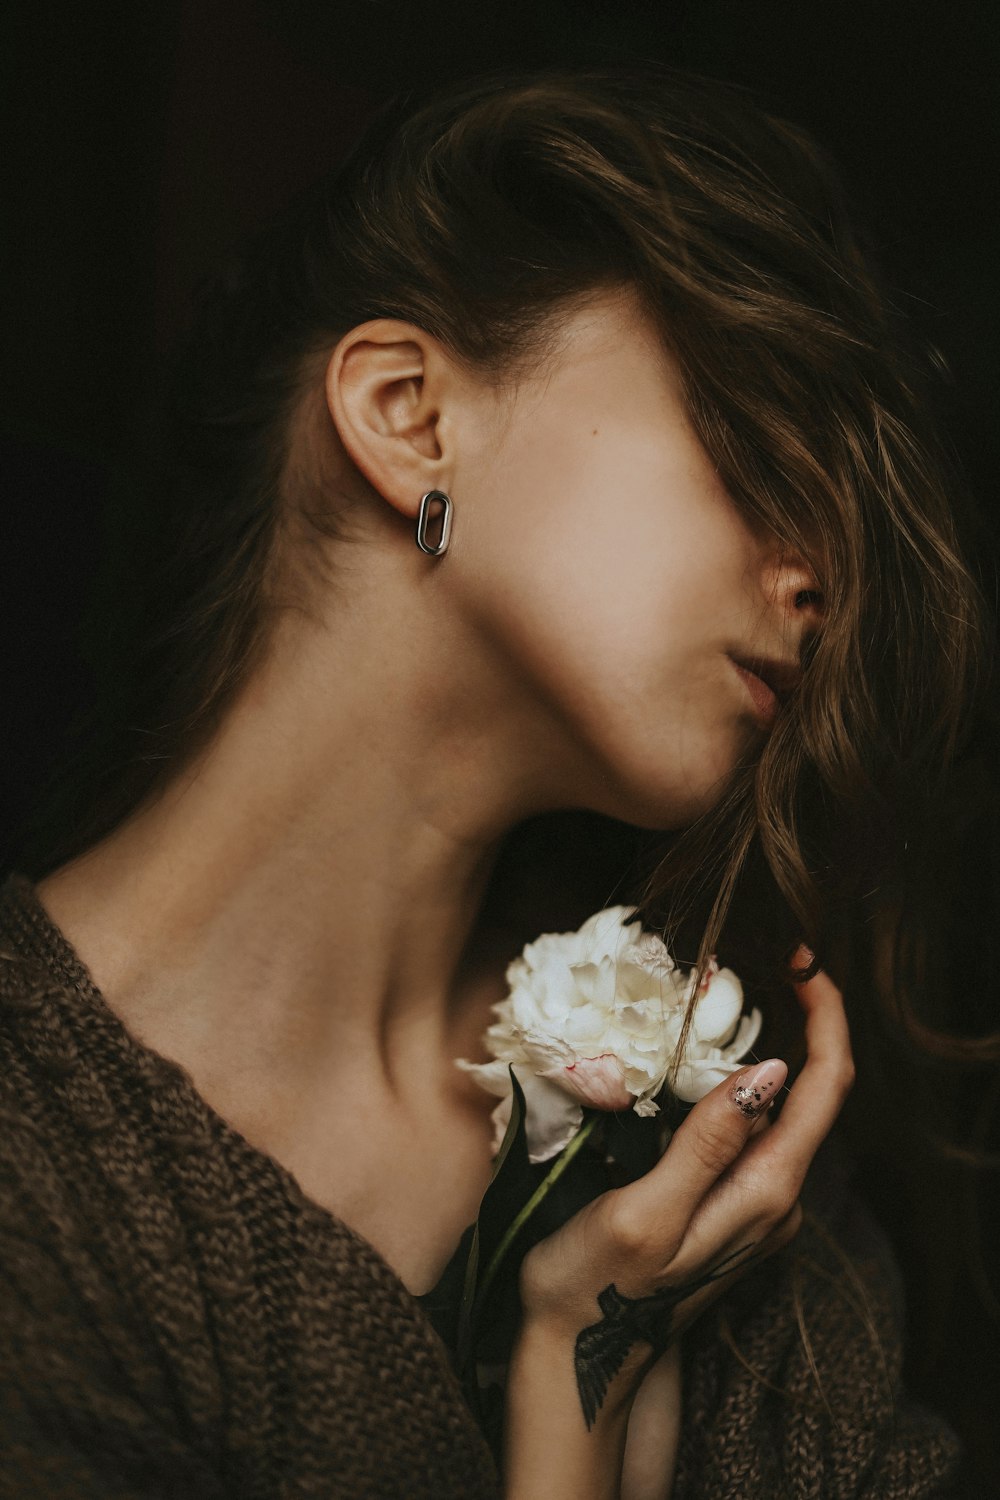 Eine Frau, die eine Blume riecht